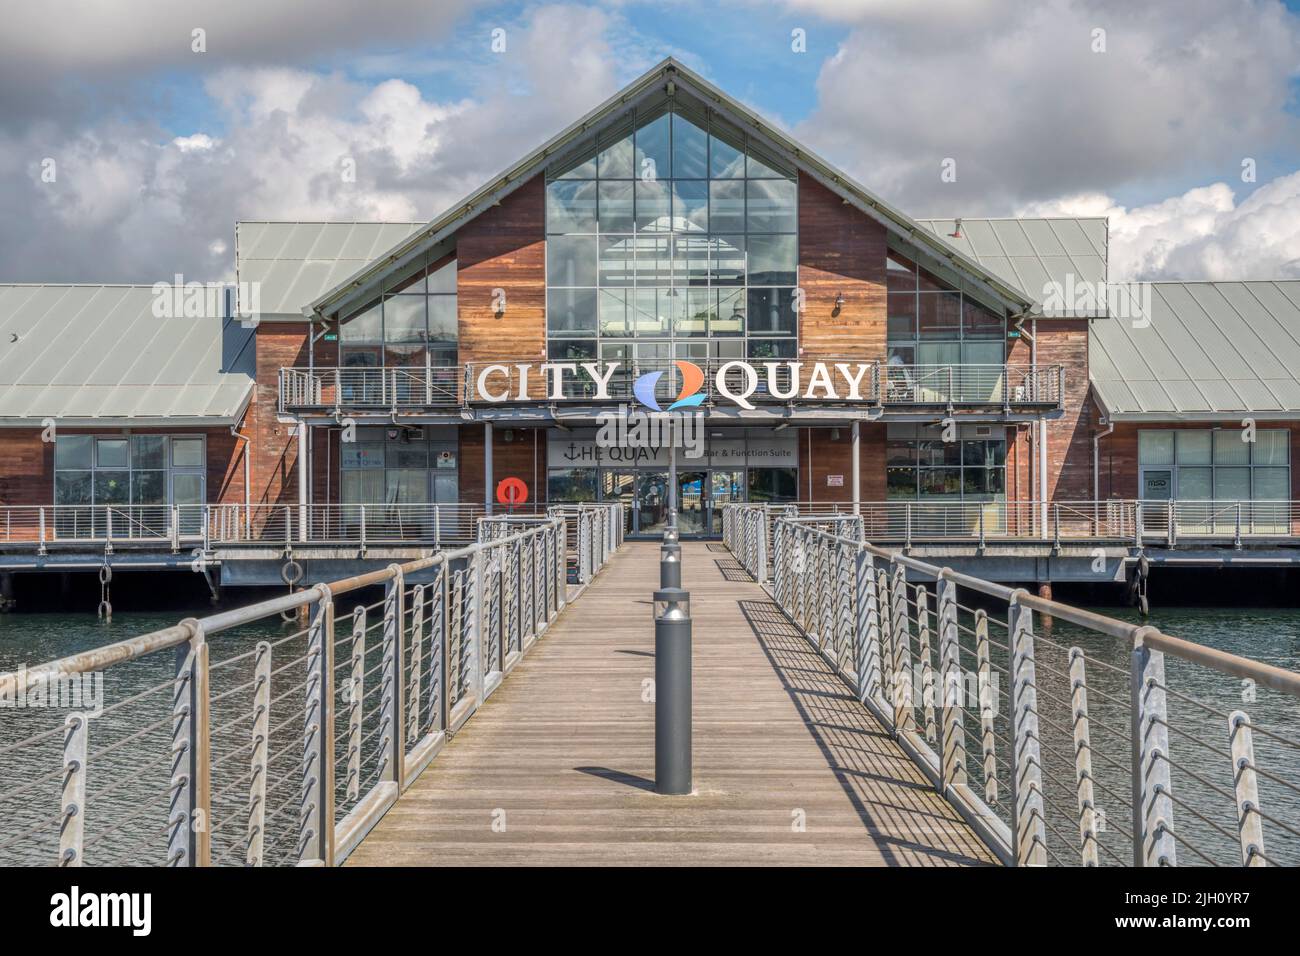 City Quay ist ein Einkaufs-, Freizeit- und Hotelgebäude rund um den ehemaligen Victoria Quay in Dundee. Stockfoto